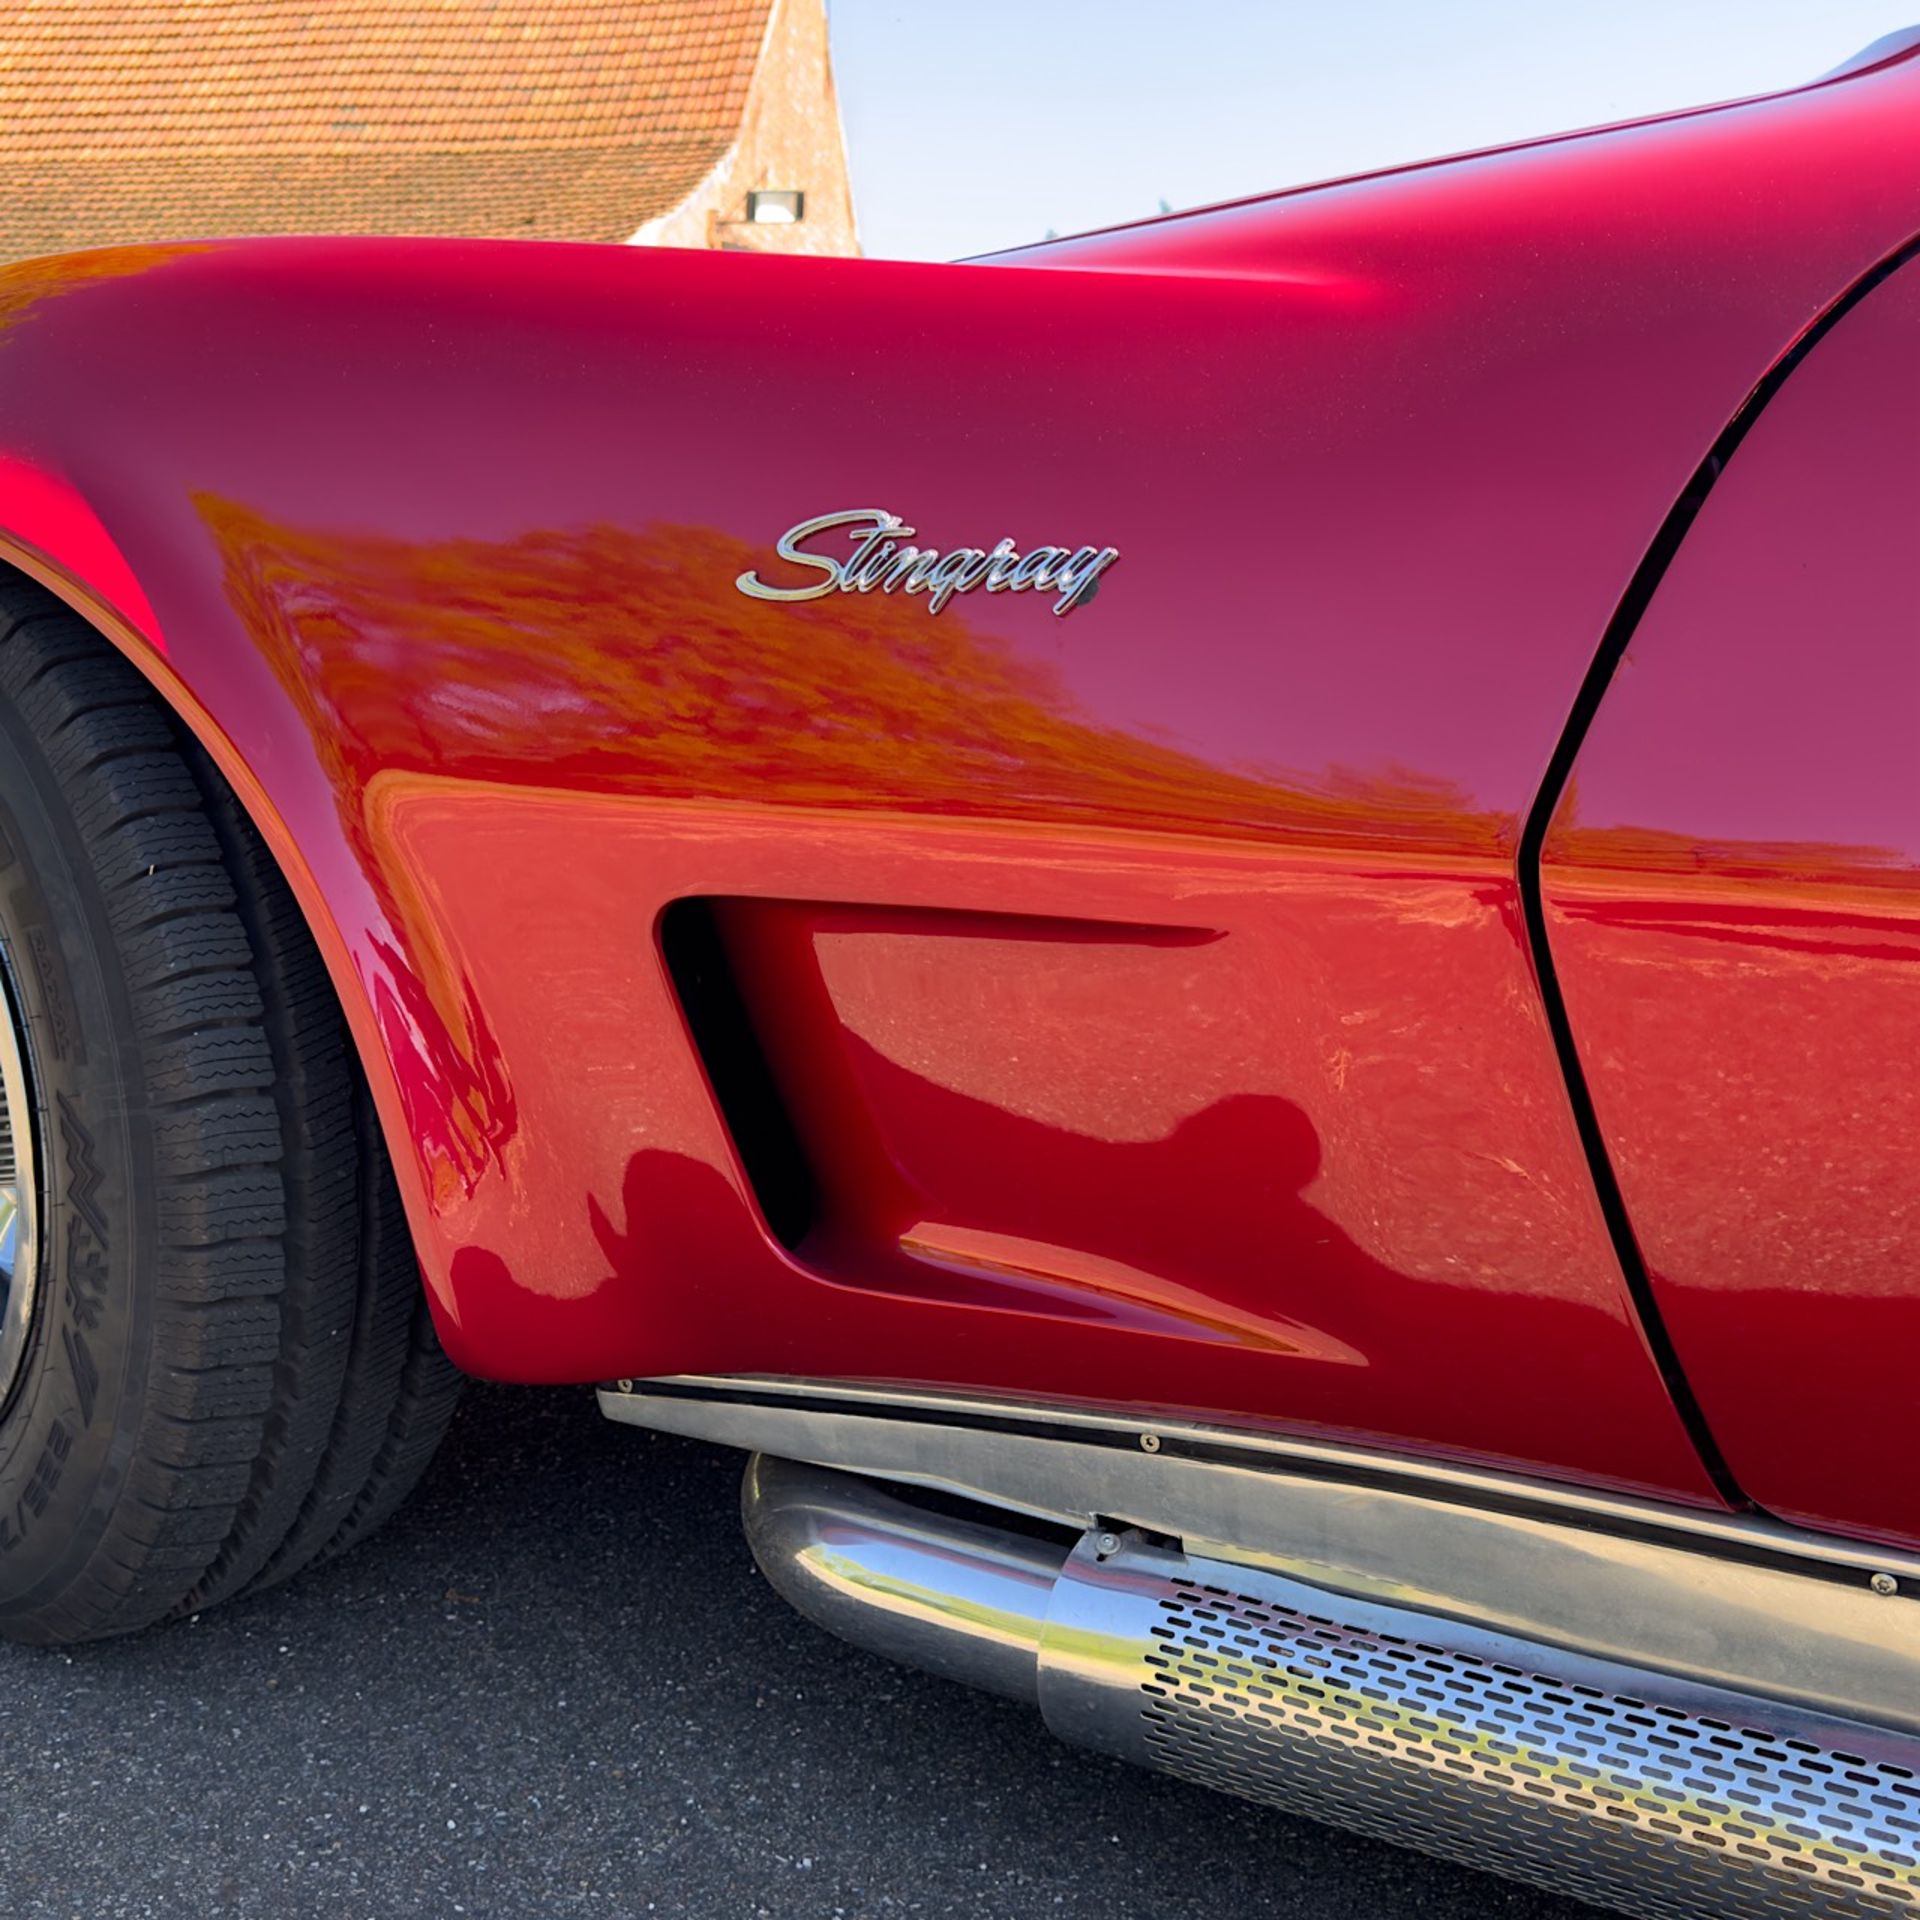 1969 Chevrolet Corvette C3 Stingray - Image 15 of 28